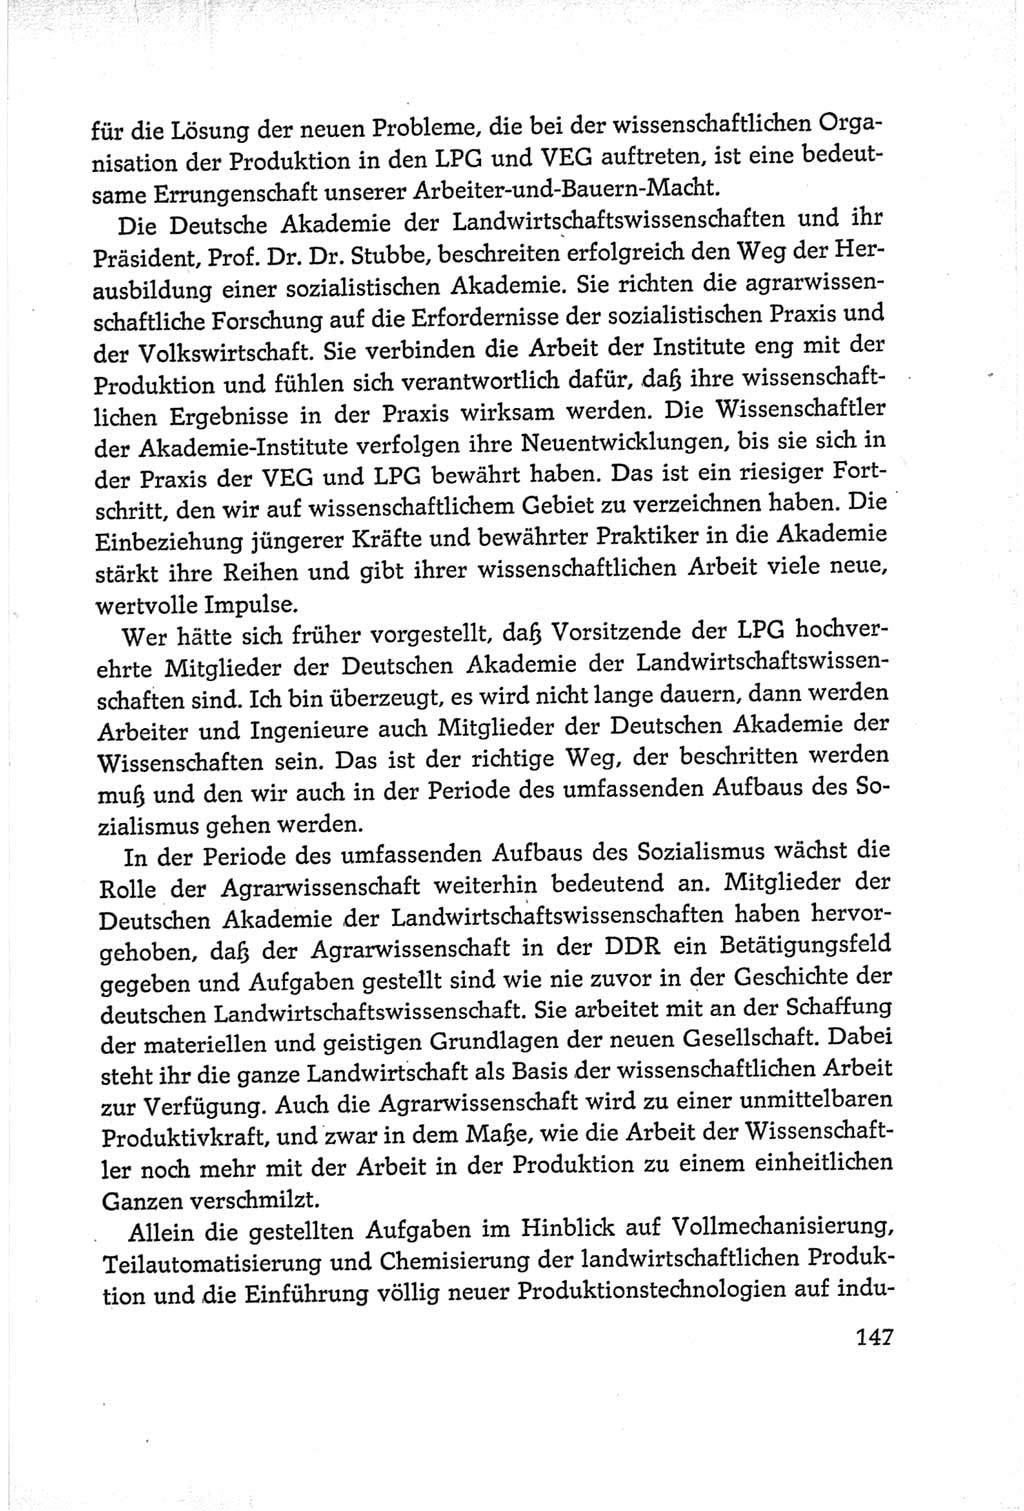 Protokoll der Verhandlungen des Ⅵ. Parteitages der Sozialistischen Einheitspartei Deutschlands (SED) [Deutsche Demokratische Republik (DDR)] 1963, Band Ⅰ, Seite 147 (Prot. Verh. Ⅵ. PT SED DDR 1963, Bd. Ⅰ, S. 147)